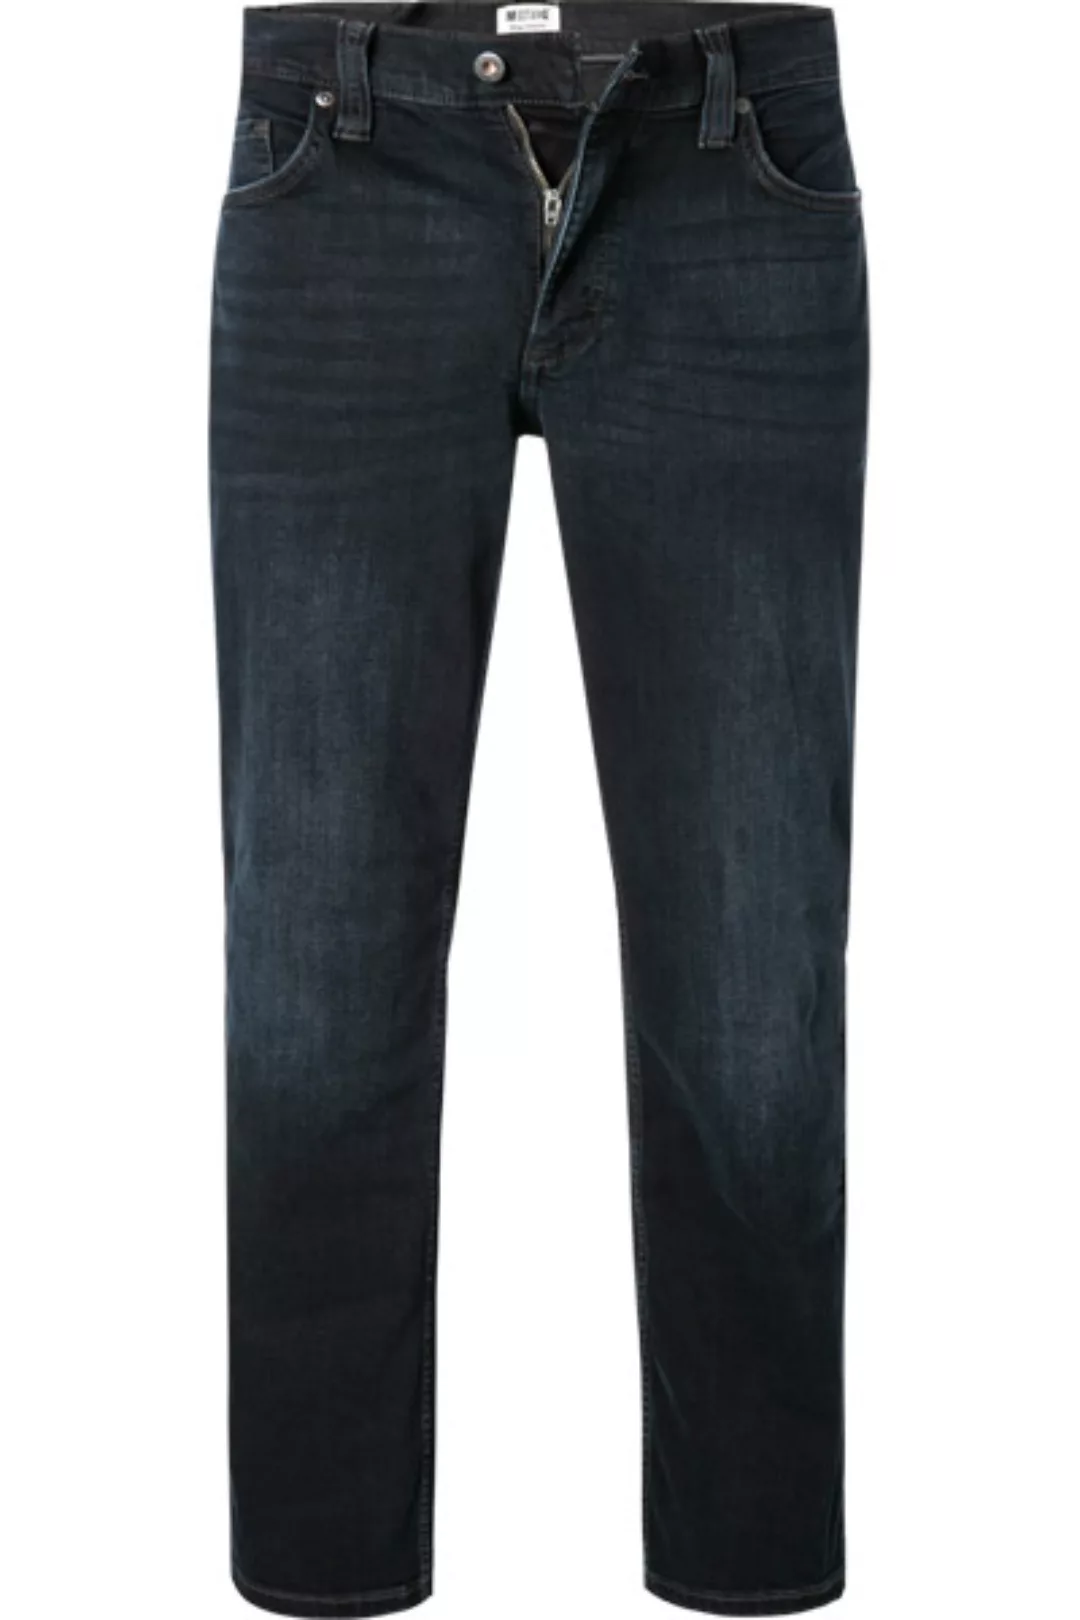 MUSTANG Jeans 1011285/5000/882 günstig online kaufen